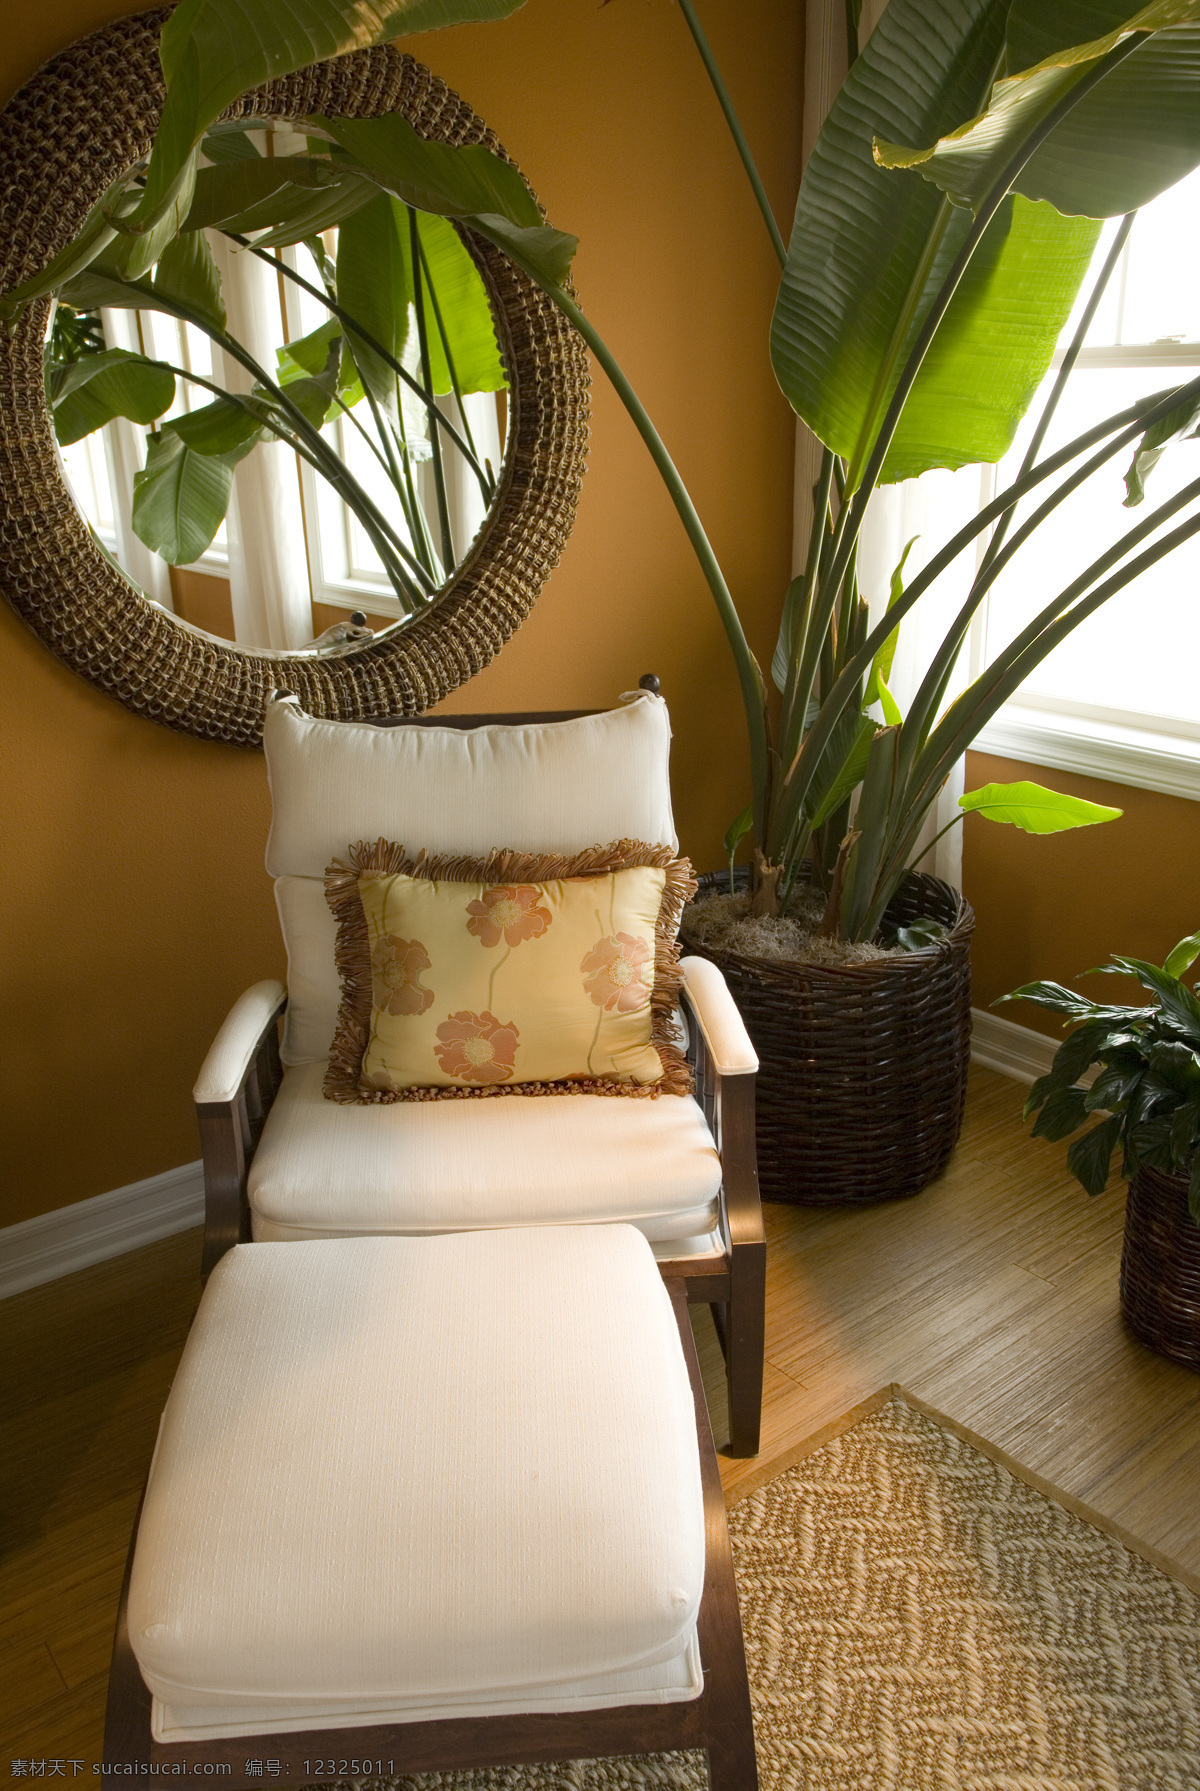 室内 沙发 床 绿植 现代风格 植物 窗户 靠垫 沙发床 舒适 地毯 豪华 高清图片 室内设计 环境家居